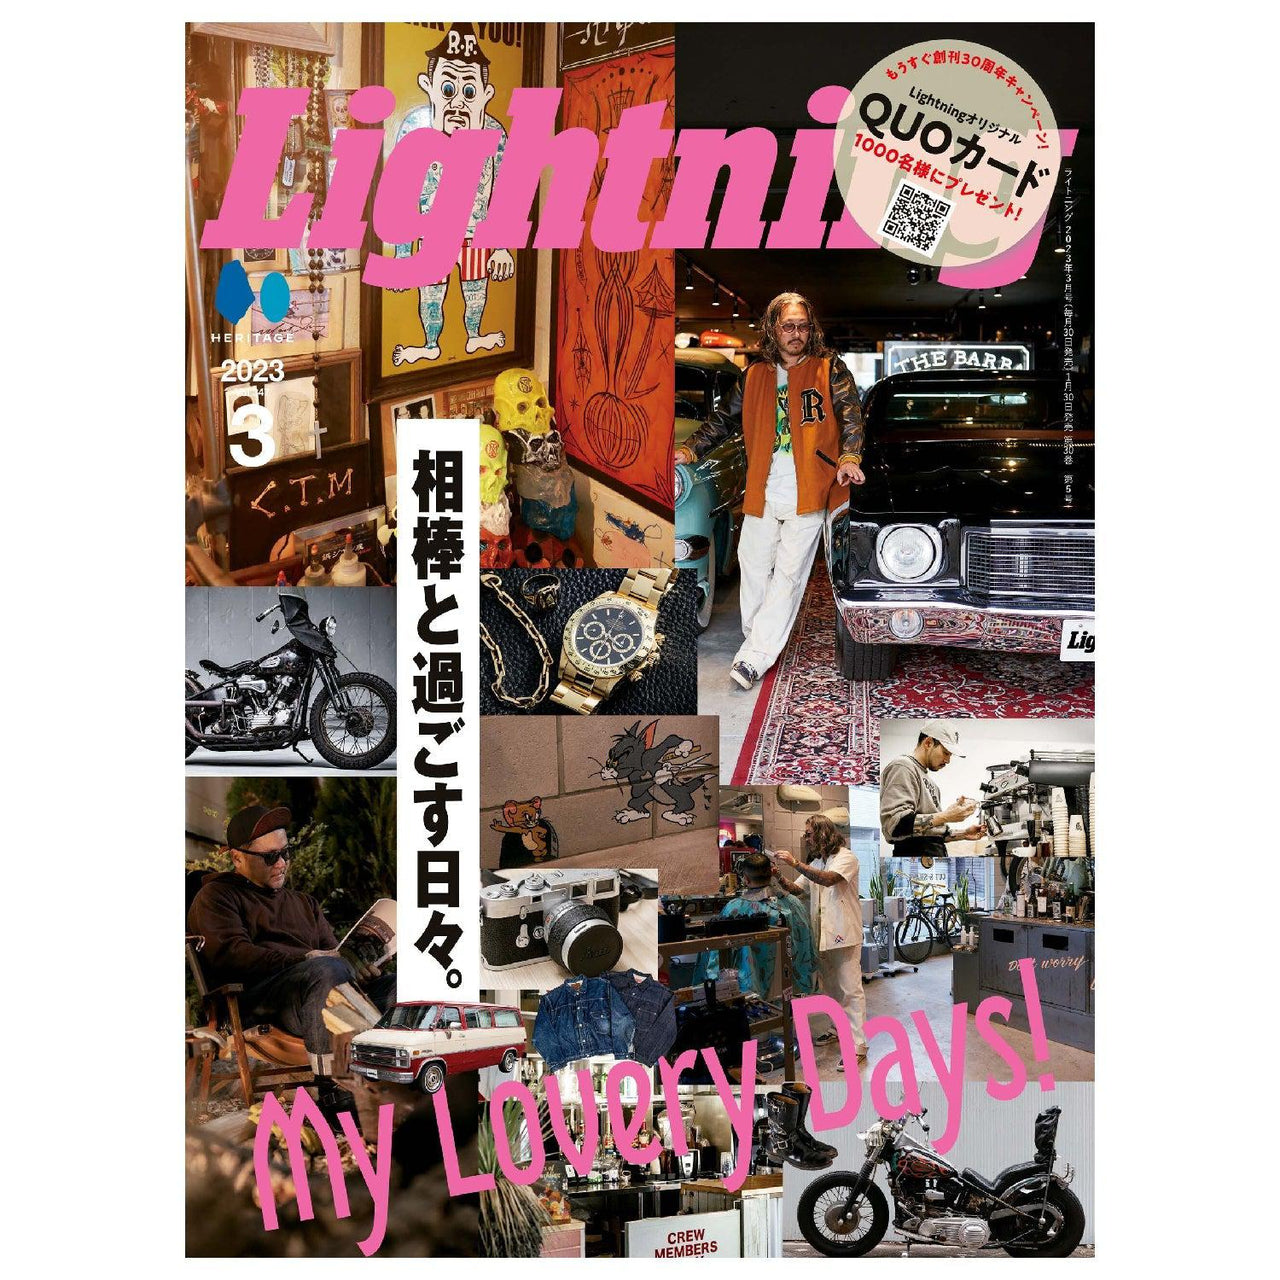 Lightning Vol.347 " My Lovery Days "-Magazine-Clutch Cafe